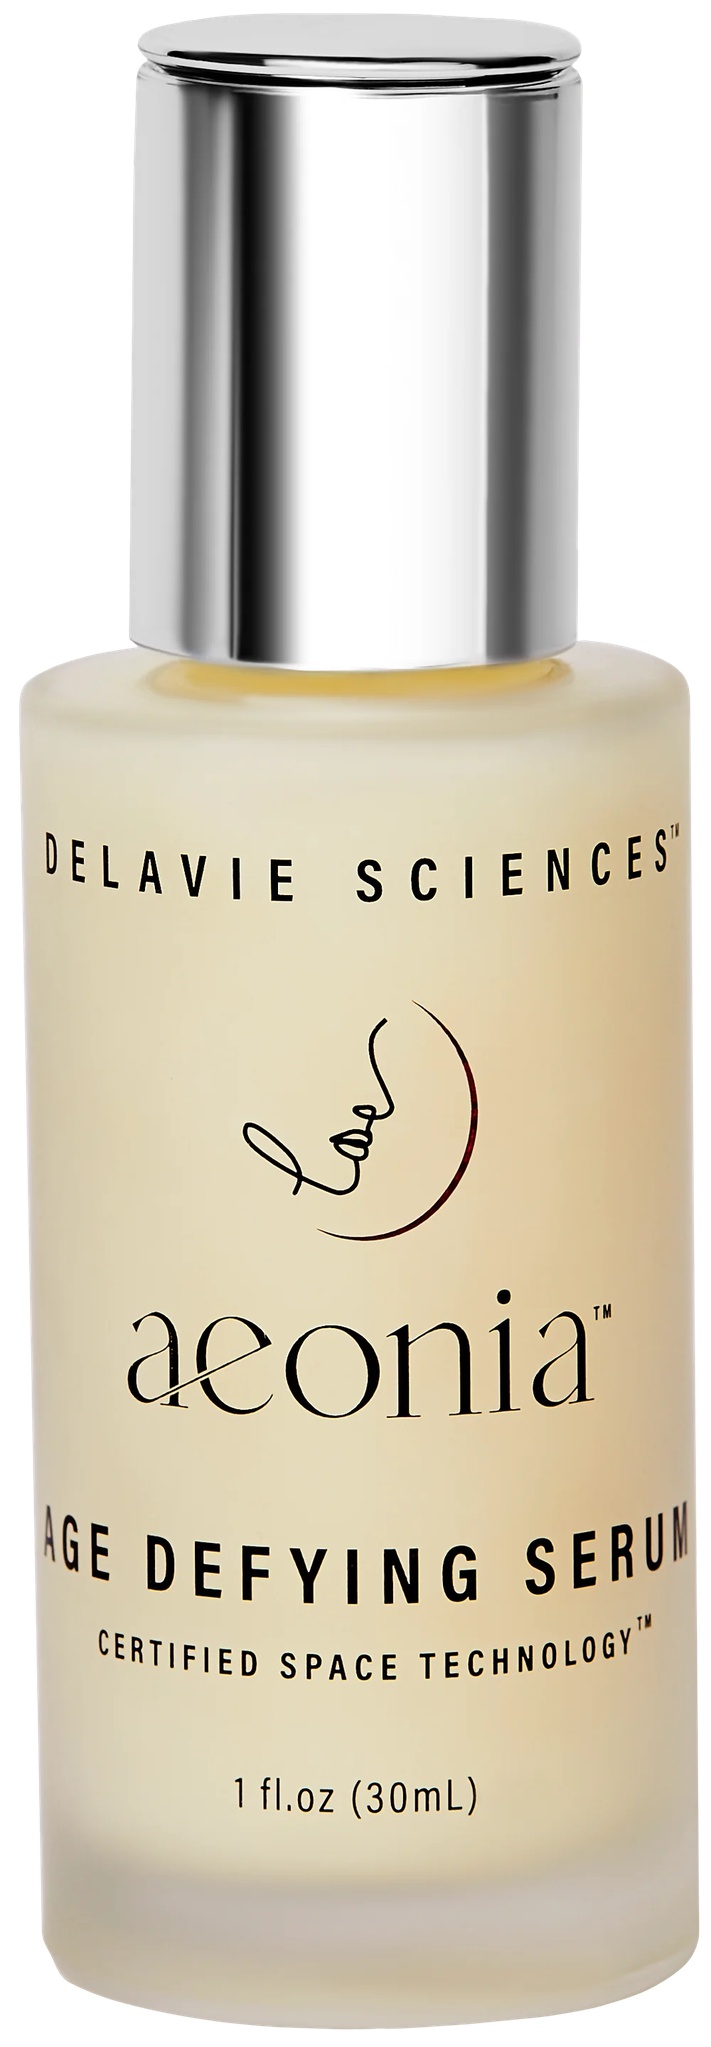 Delavie Sciences Aeonia Serum